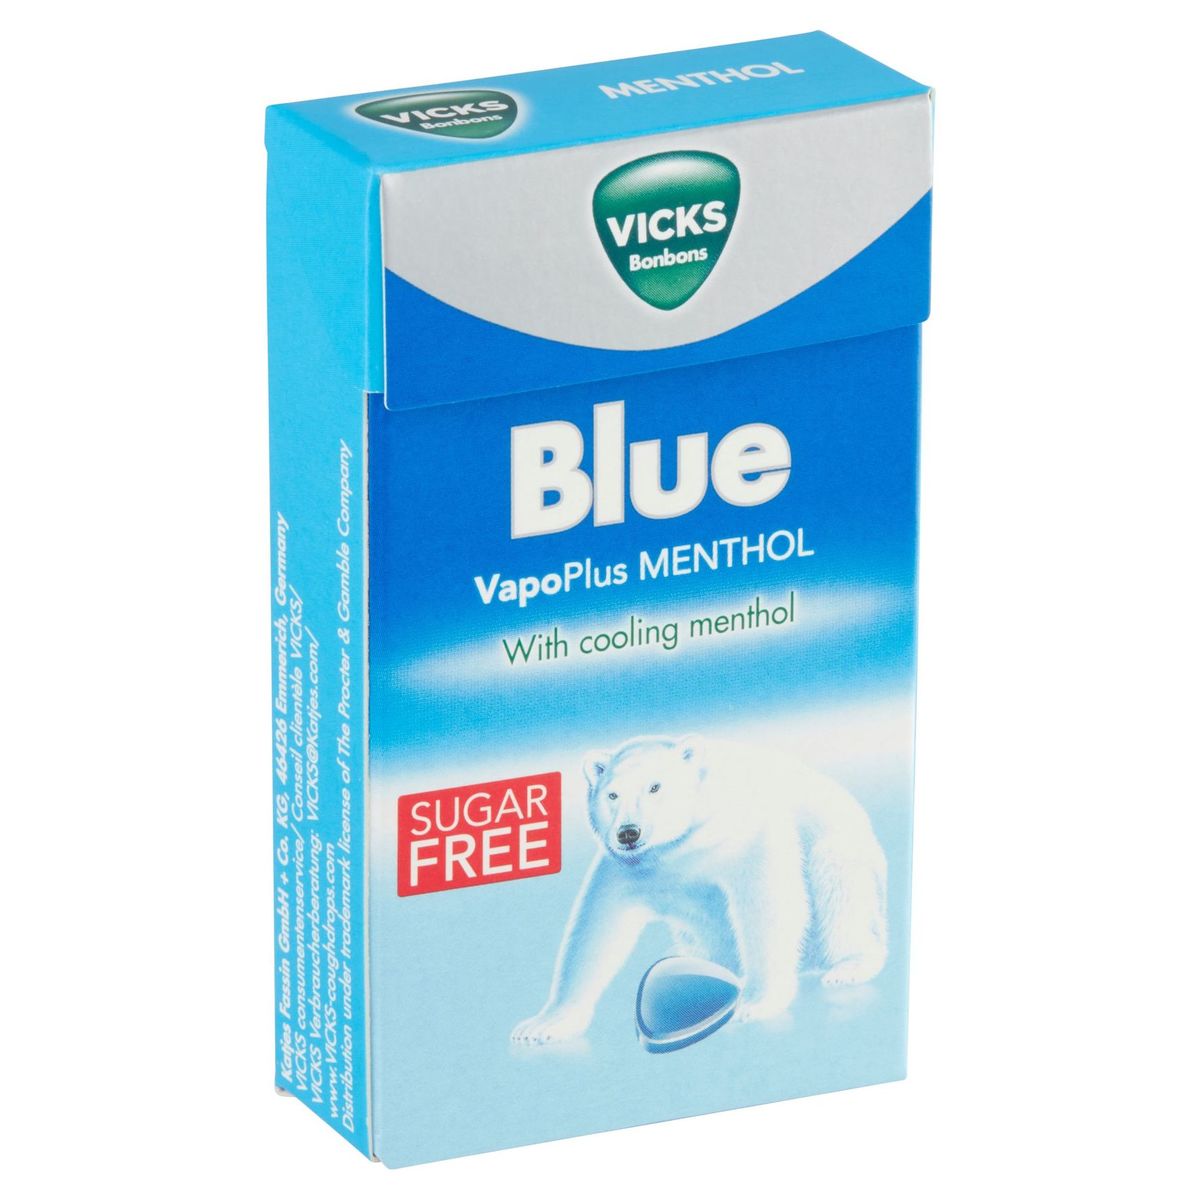 Vicks Bonbons Blue VapoPlus Menthol 40 g